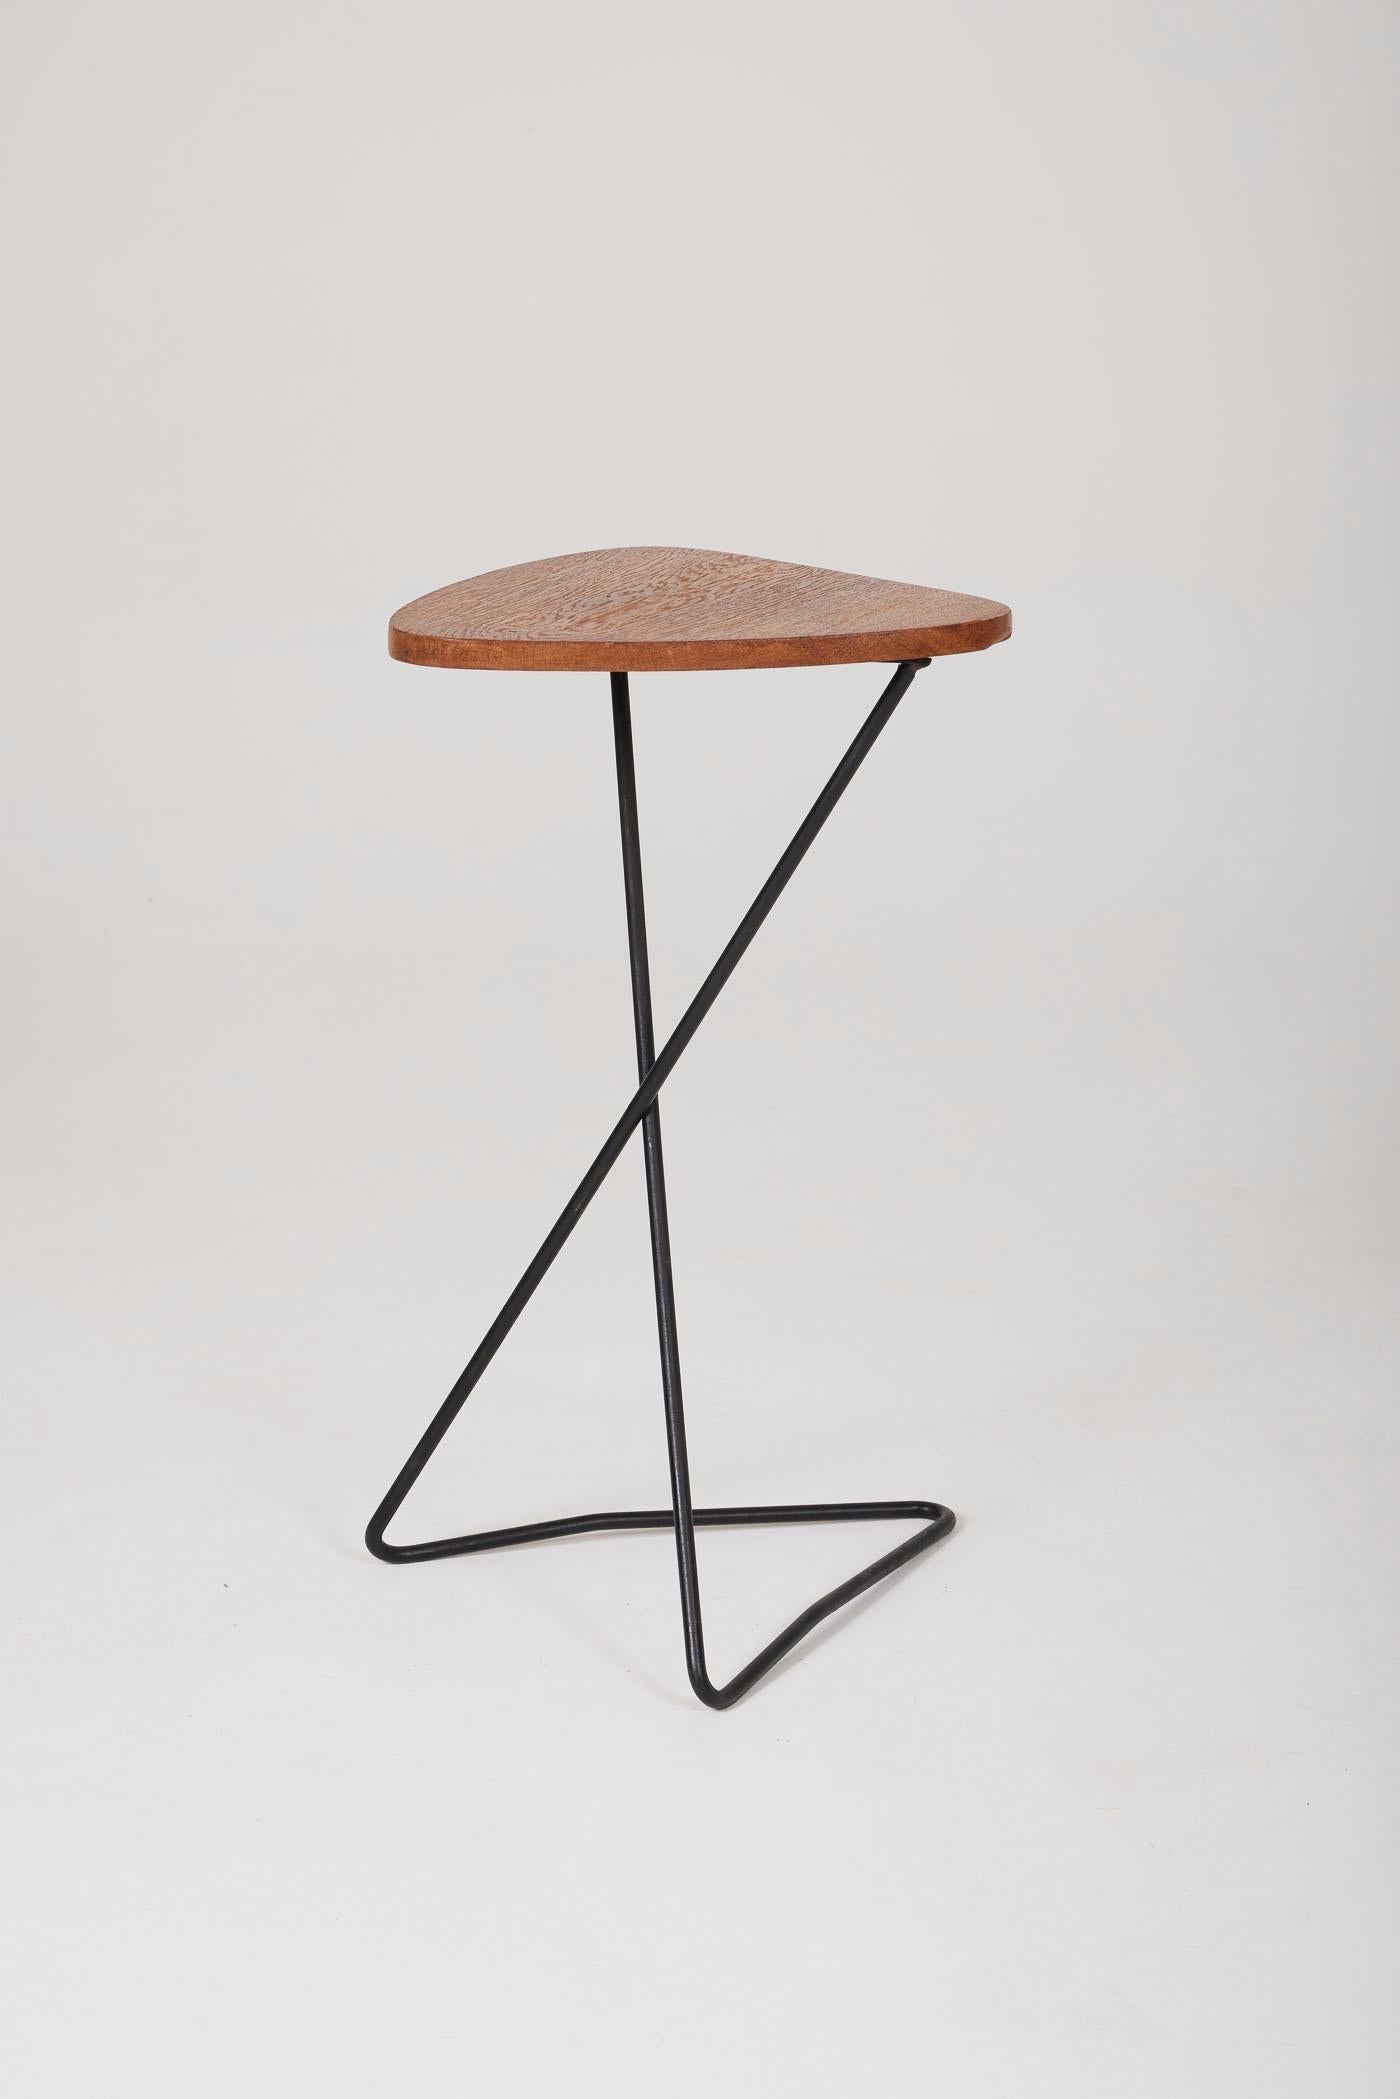 Table d'appoint triangulaire en bois reposant sur une base en métal tubulaire laqué noir. 2 tables disponibles. En parfait état.
DV479